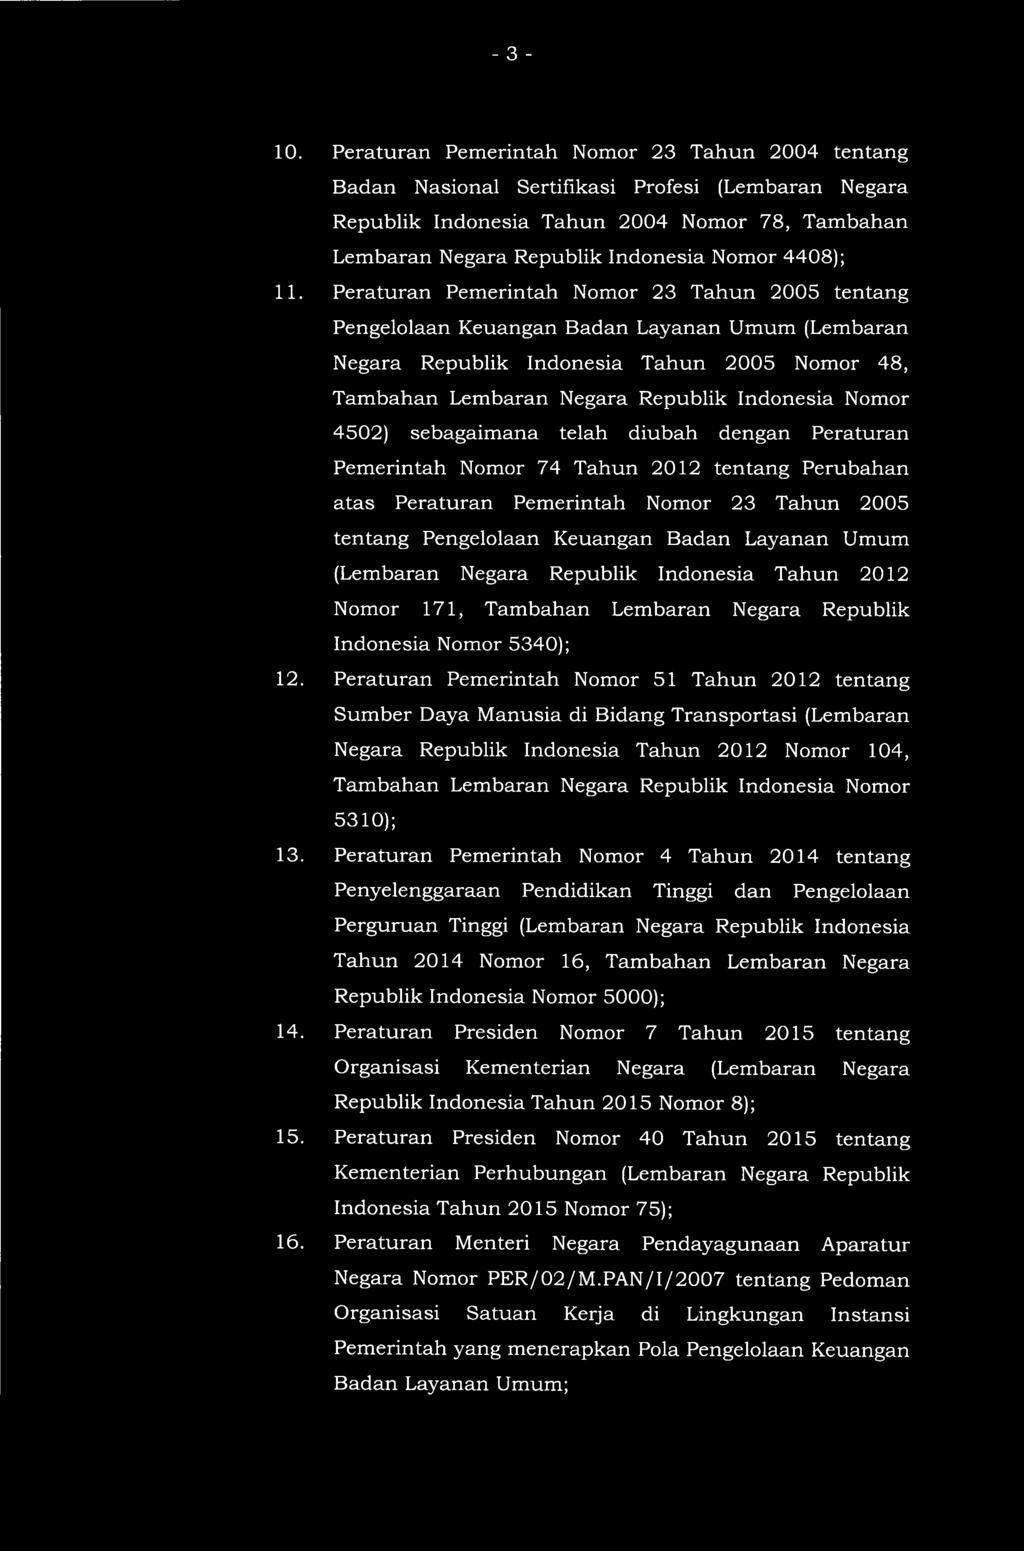 11. Peraturan Pemerintah Nomor 23 Tahun 2005 tentang Pengelolaan Keuangan Badan Layanan Umum (Lembaran Negara Republik Indonesia Tahun 2005 Nomor 48, Tambahan Lembaran Negara Republik Indonesia Nomor